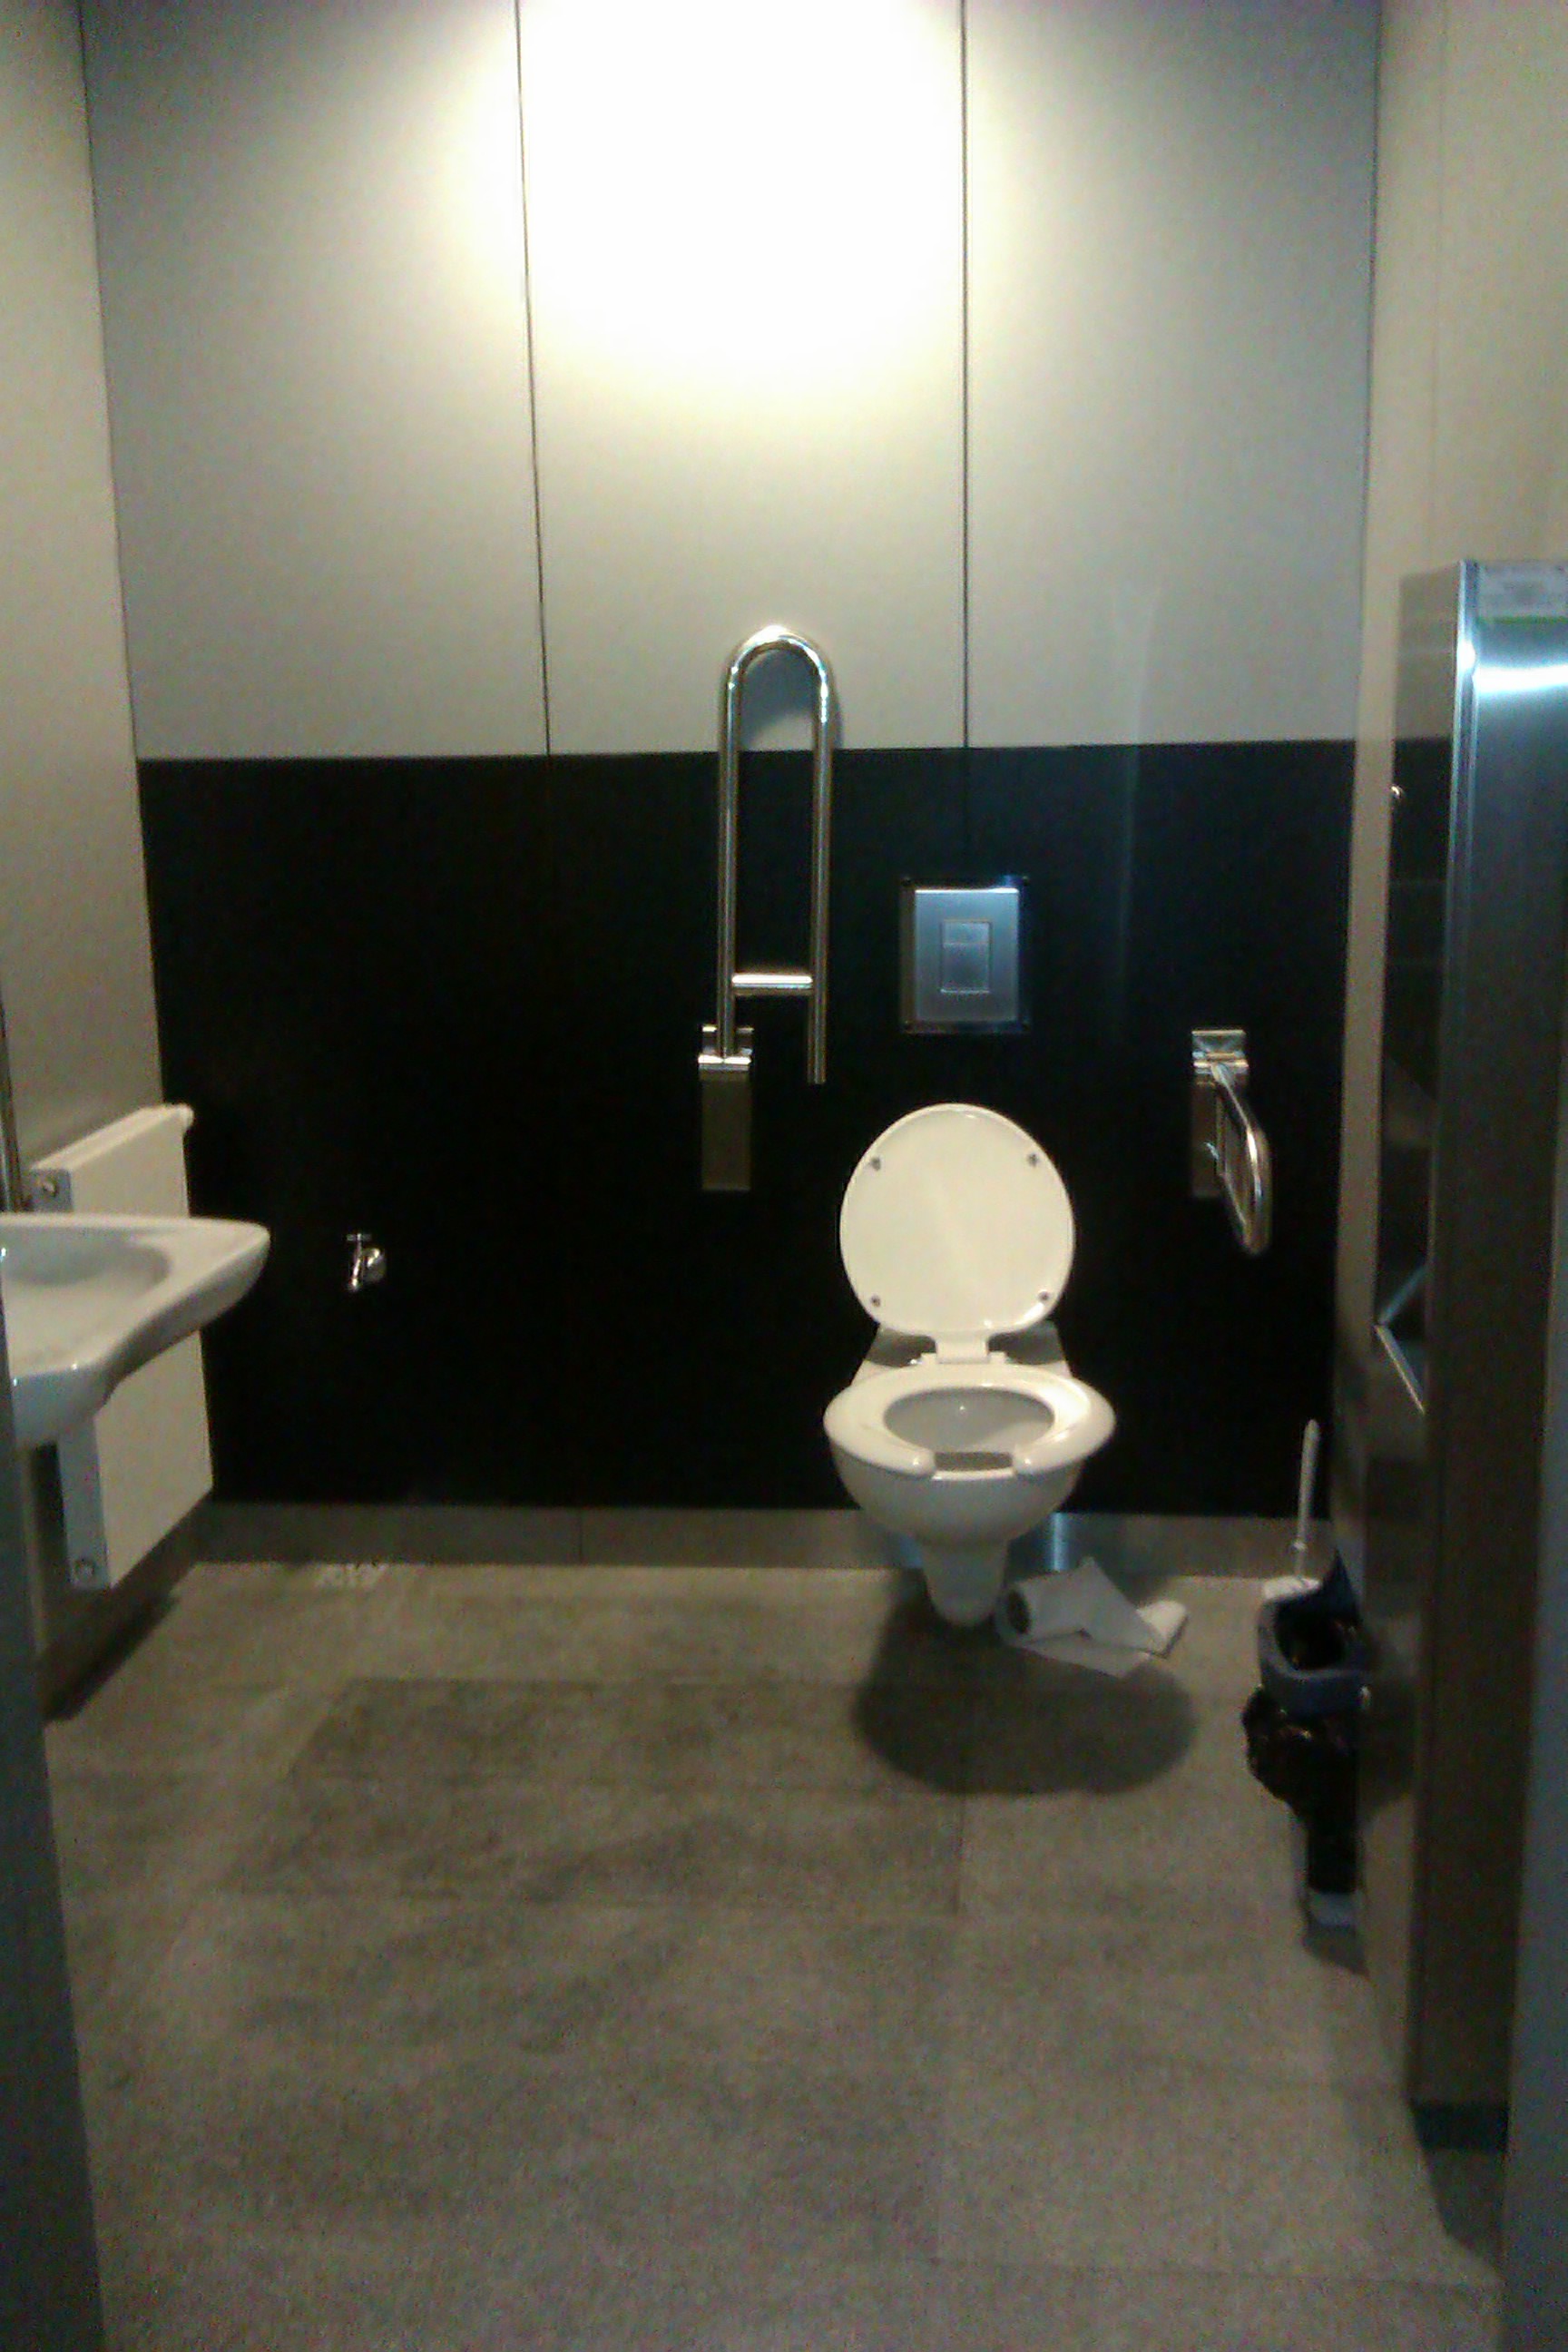  Pomieszczenia - toalety dla niepełnosprawnych filharmonia świętokrzyska